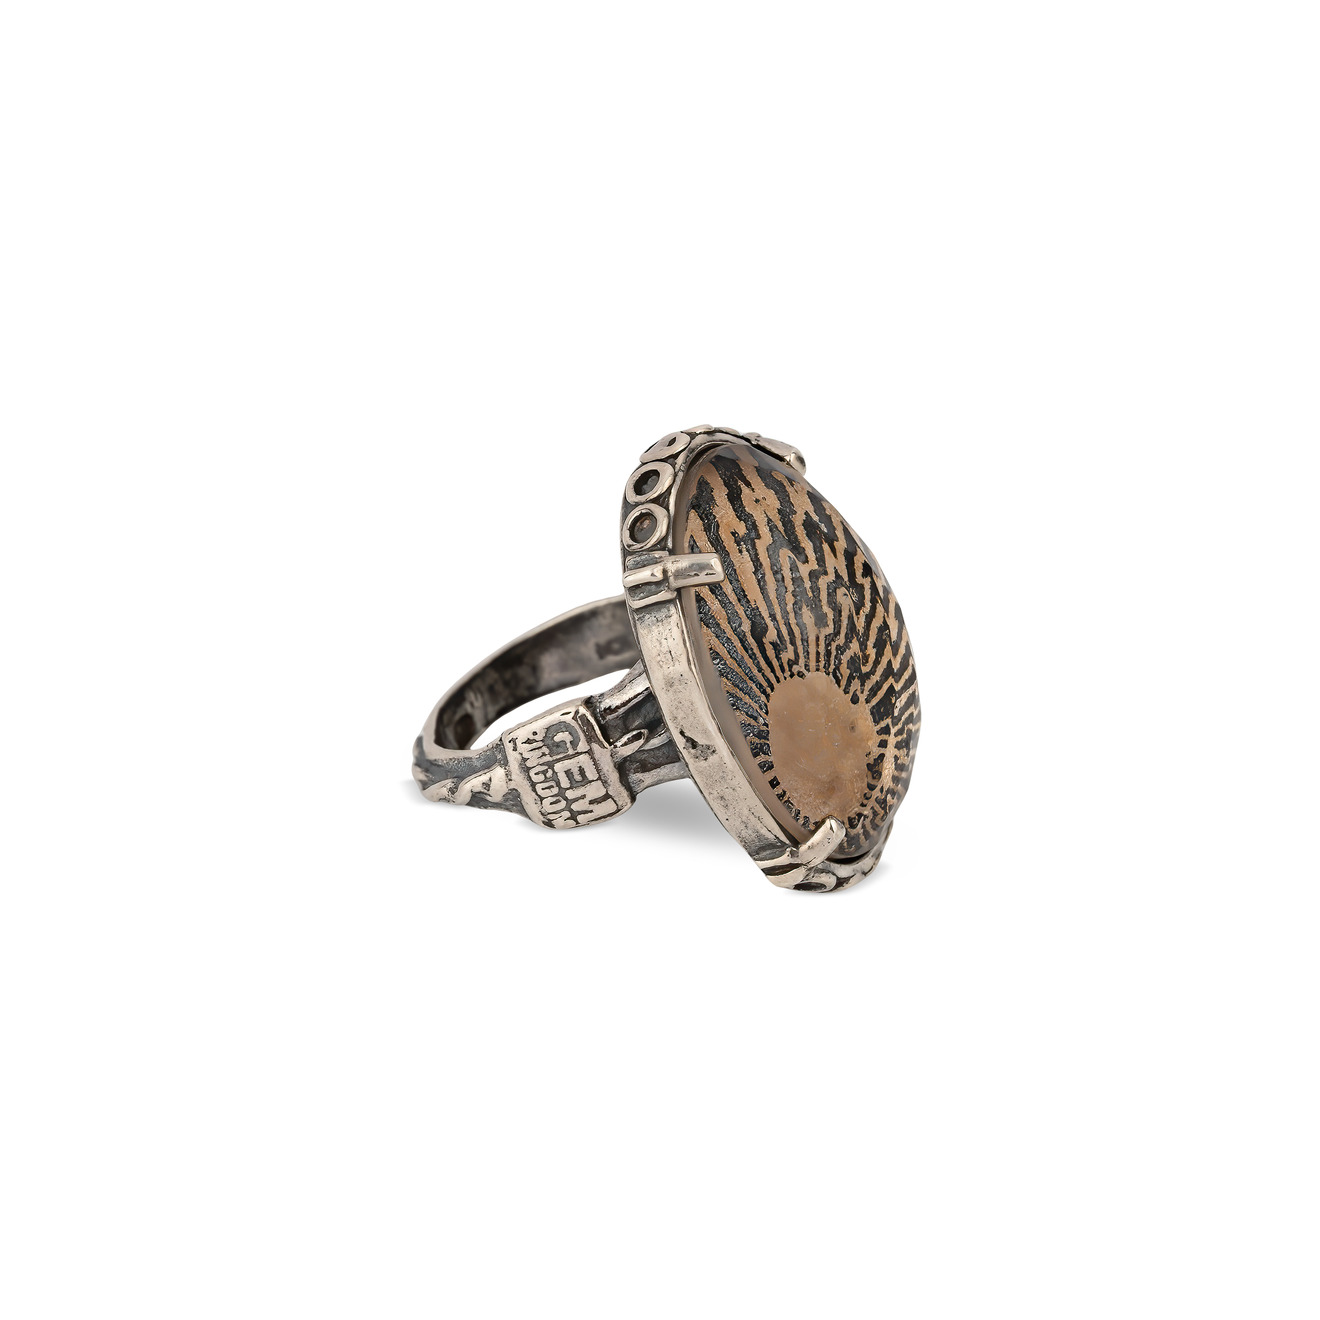 Gem Kingdom Бежево-черное кольцо из серебра с ручной росписью gem kingdom кольцо из серебра со вставкой из инкурстированного стекла ручной росписи с изображением пегаса